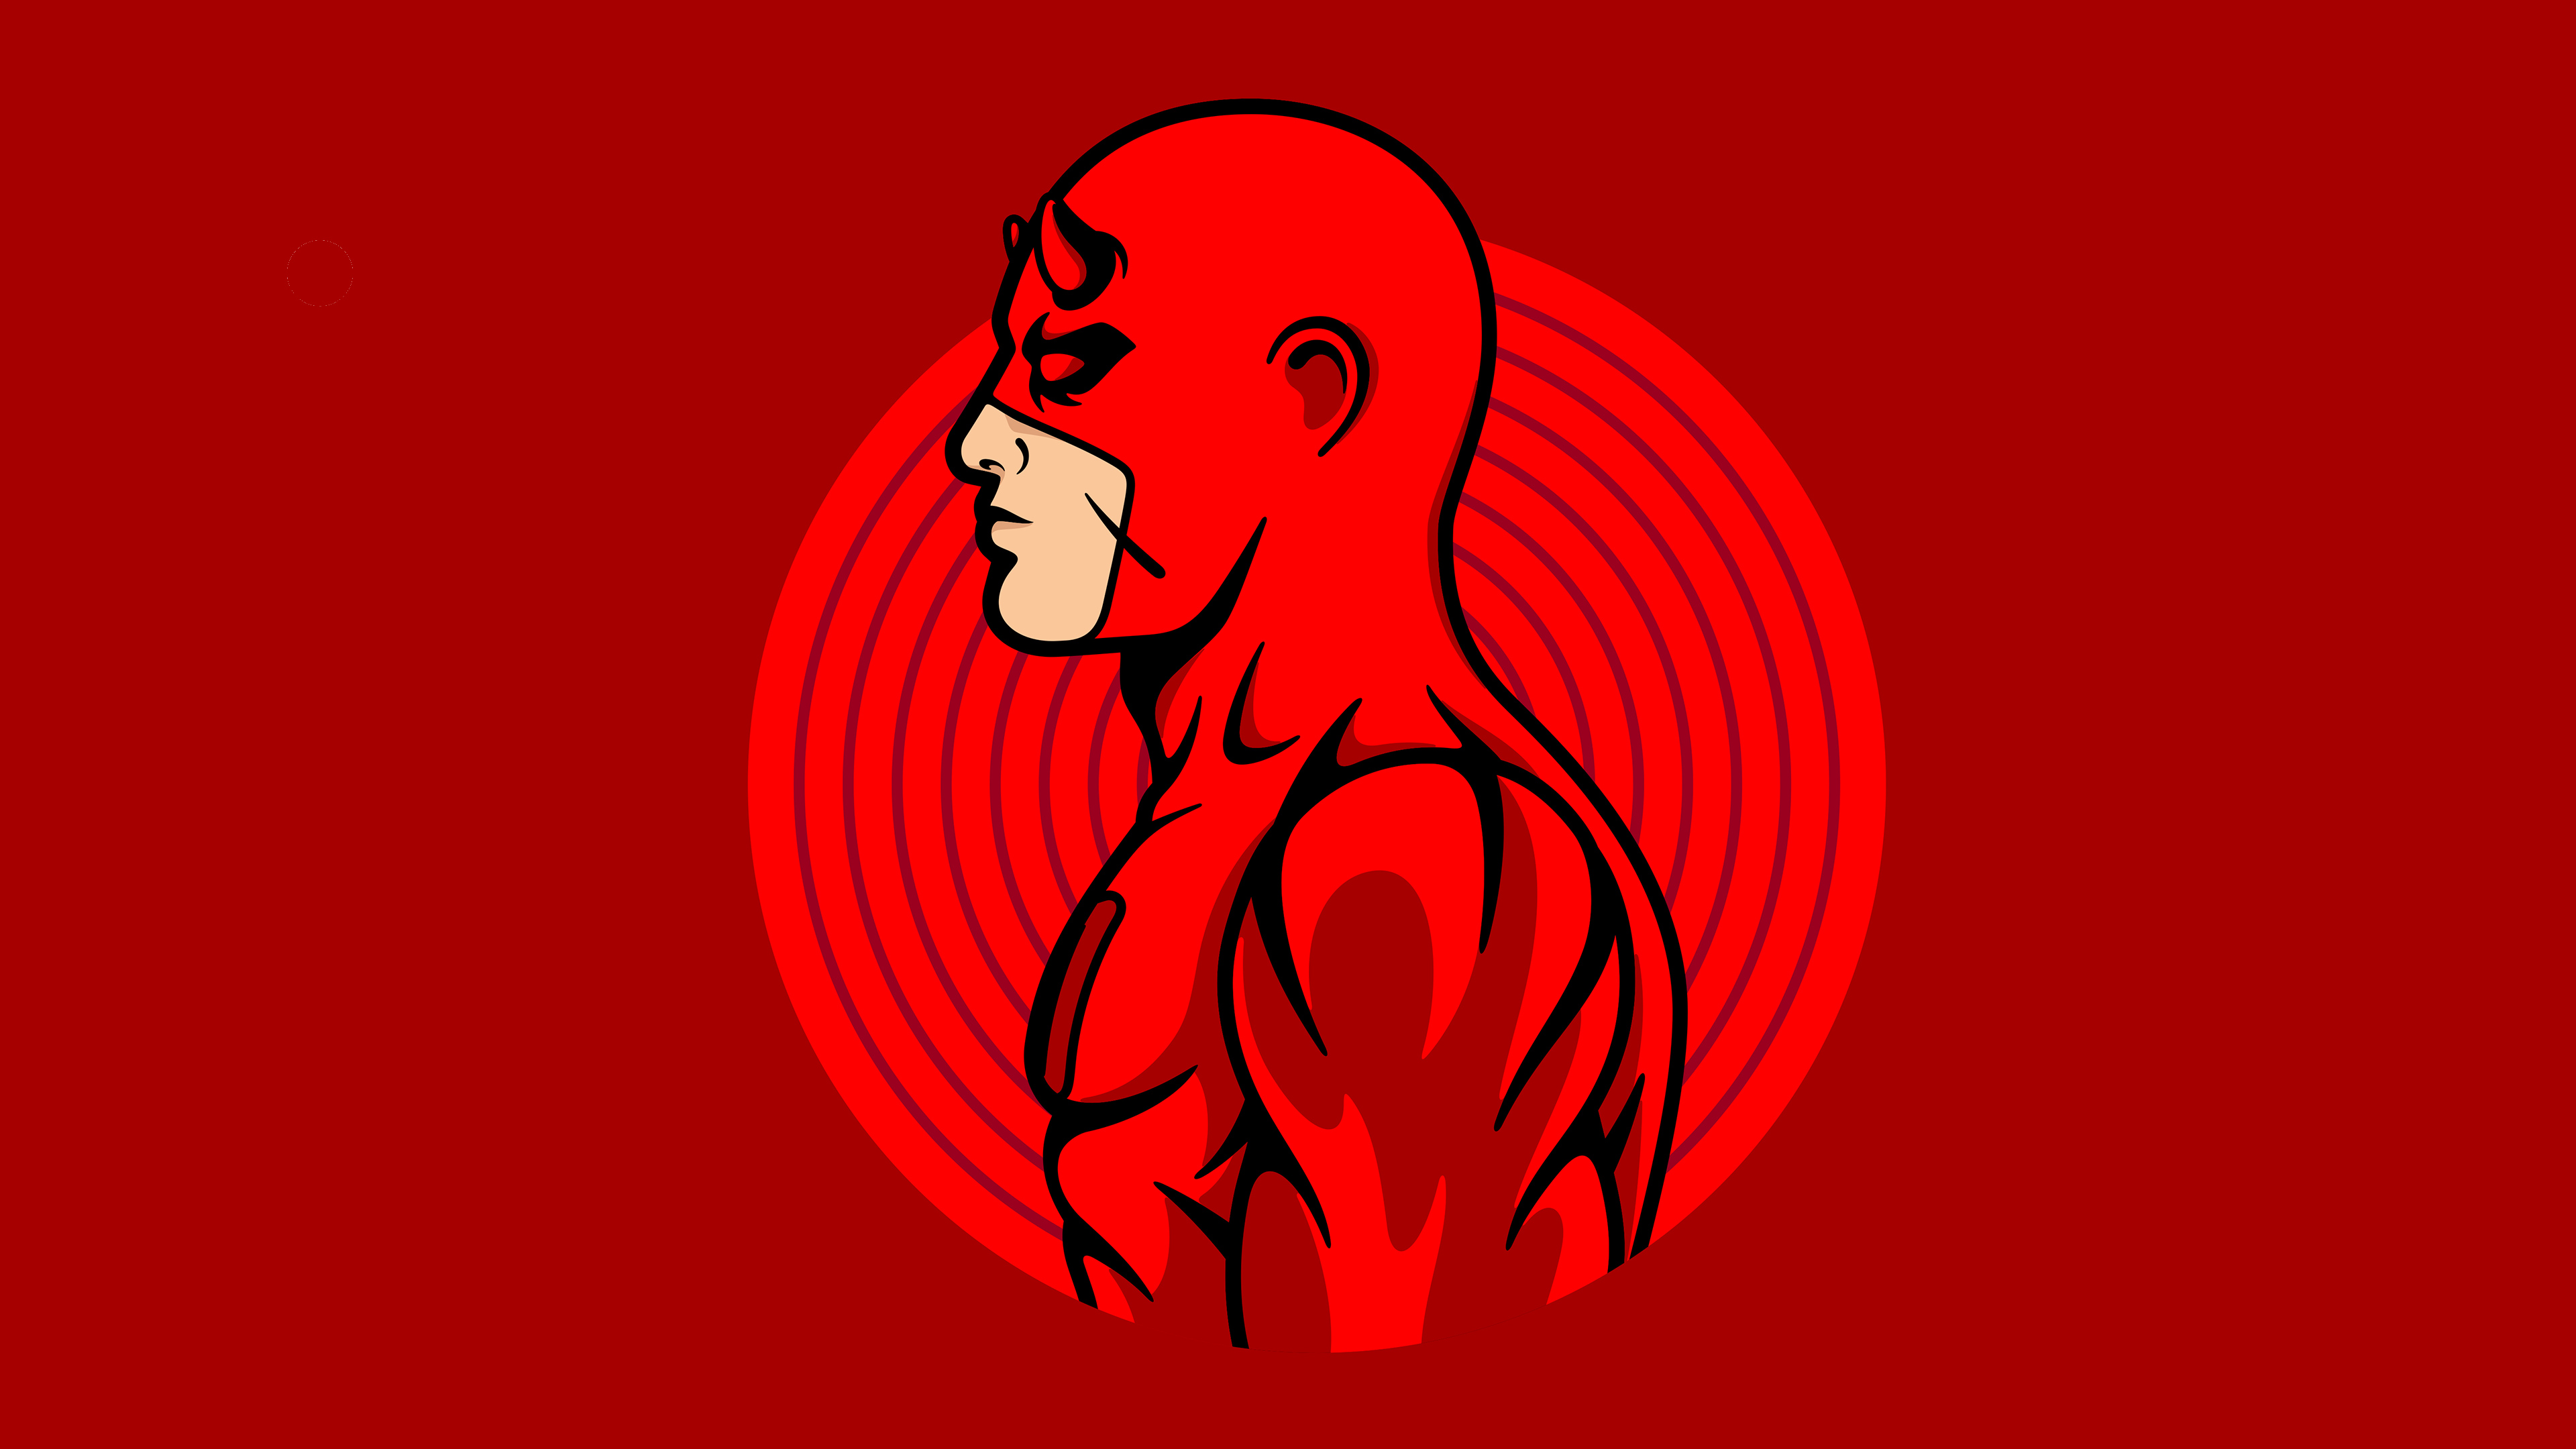 Daredevil Marvel Comics Minimalist Red 3840x2160